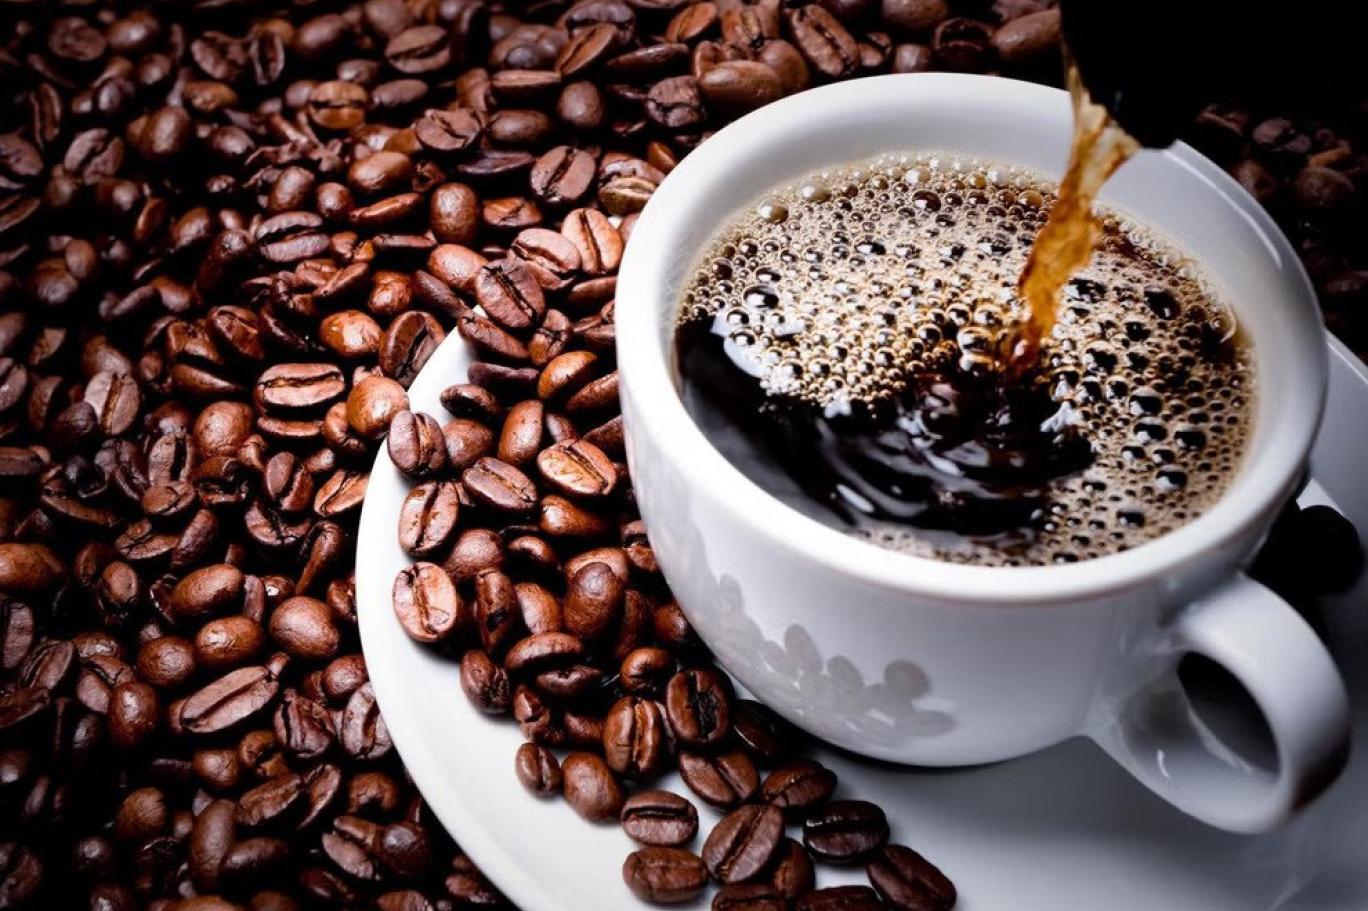 ماذا يحدث للجسم عند شرب القهوة بكثرة يوميًا.. هل الإفراط بها يضرك أم لا؟